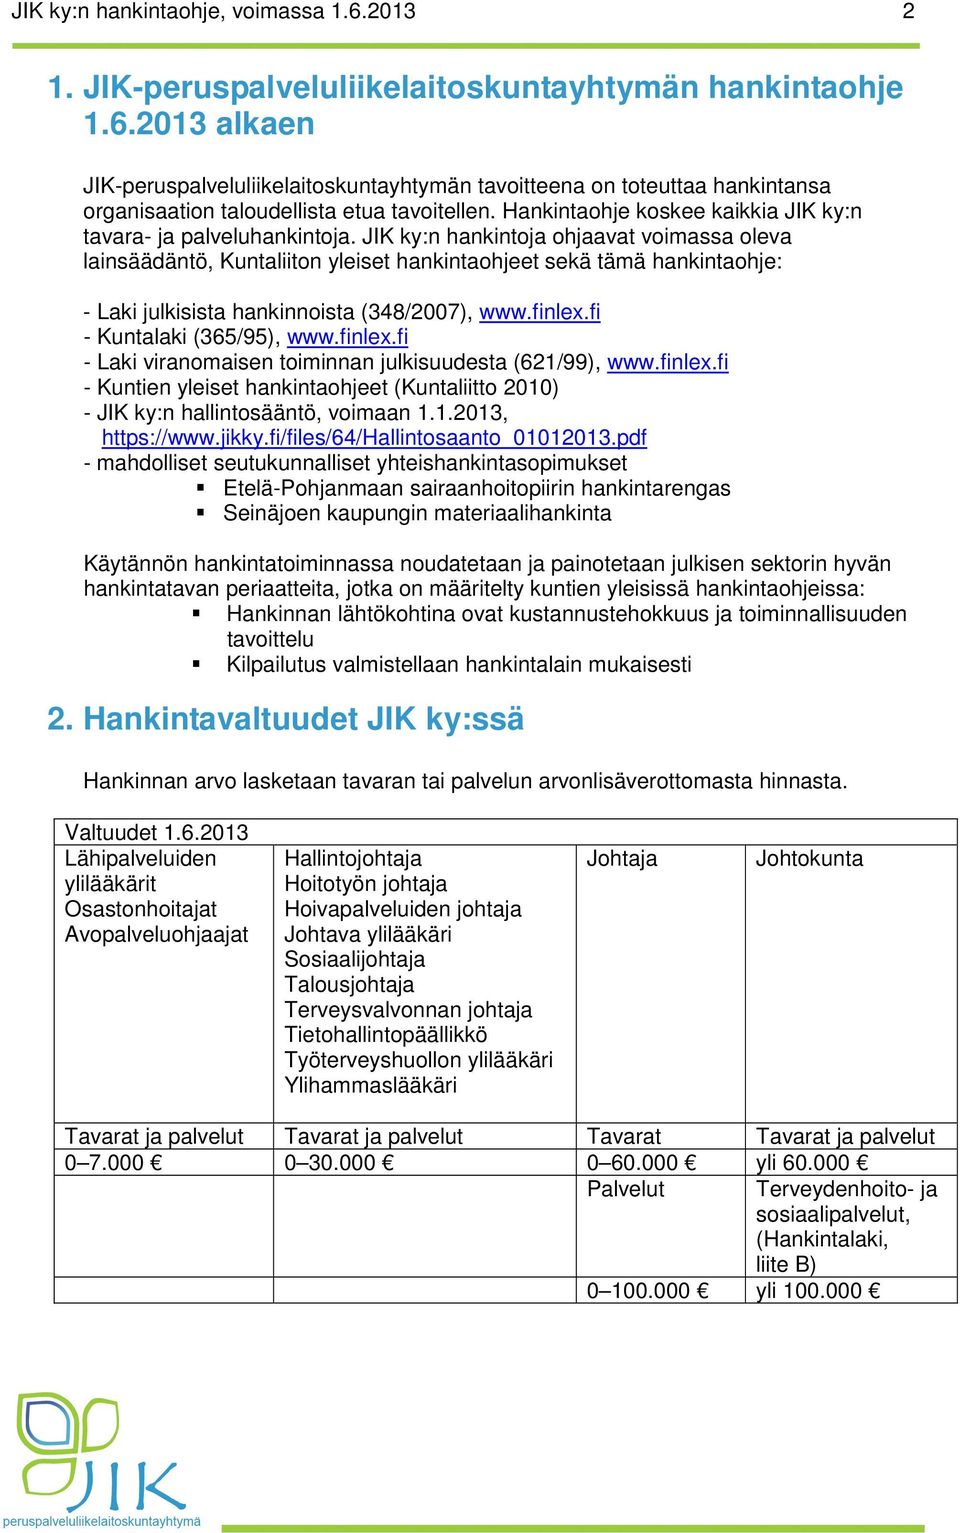 JIK ky:n hankintoja ohjaavat voimassa oleva lainsäädäntö, Kuntaliiton yleiset hankintaohjeet sekä tämä hankintaohje: - Laki julkisista hankinnoista (348/2007), www.finlex.fi - Kuntalaki (365/95), www.